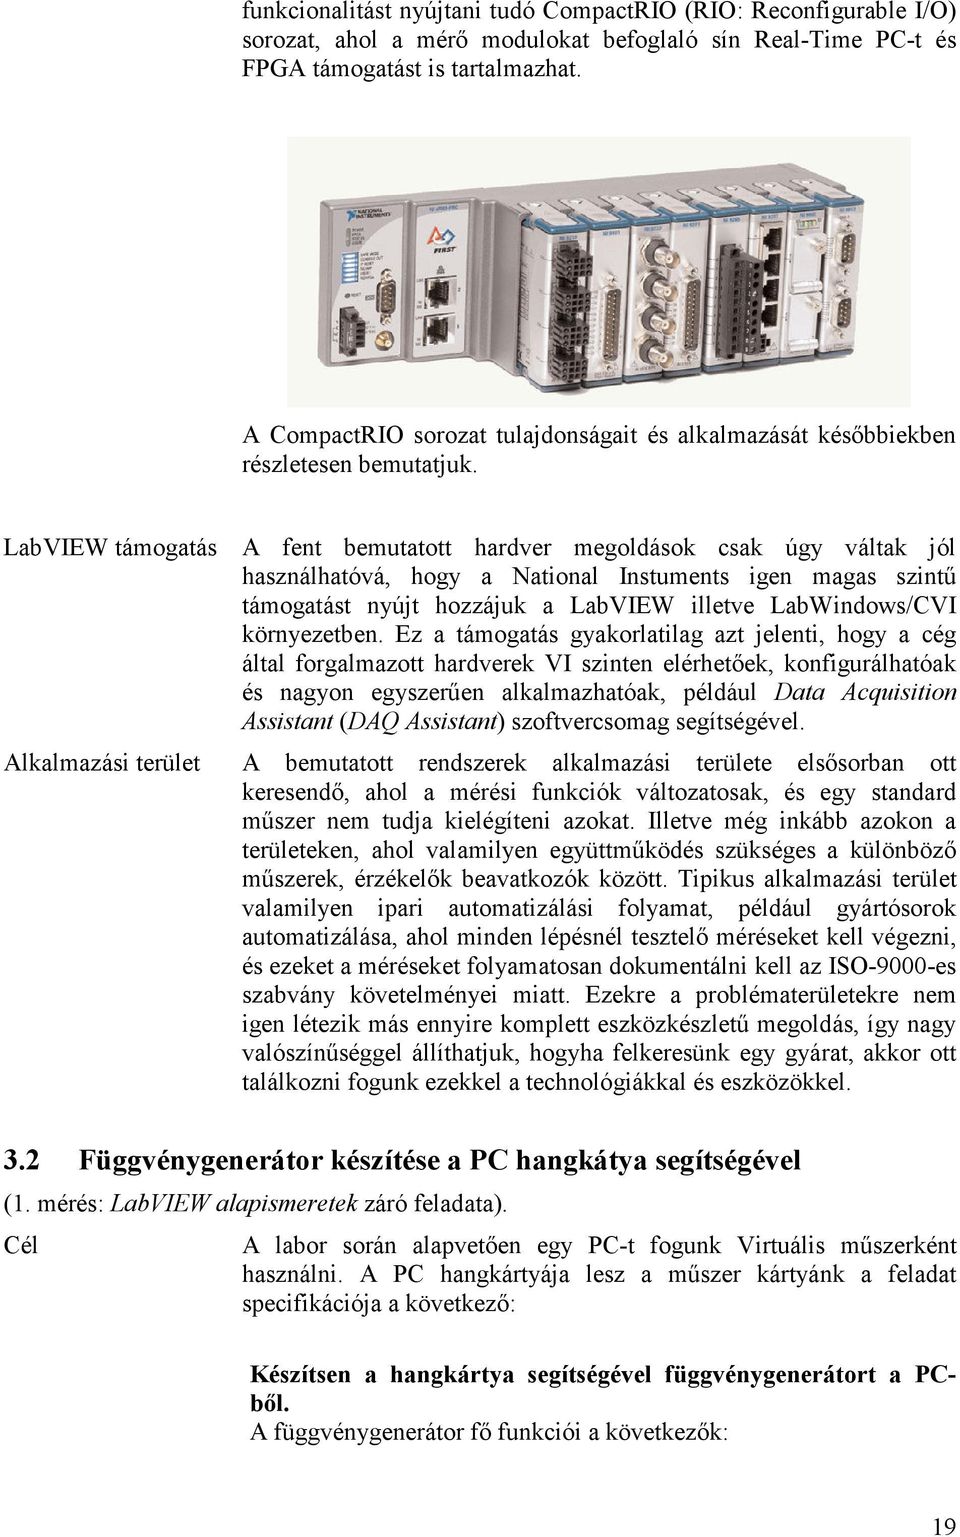 LabVIEW támogatás A fent bemutatott hardver megoldások csak úgy váltak jól használhatóvá, hogy a National Instuments igen magas szintő támogatást nyújt hozzájuk a LabVIEW illetve LabWindows/CVI